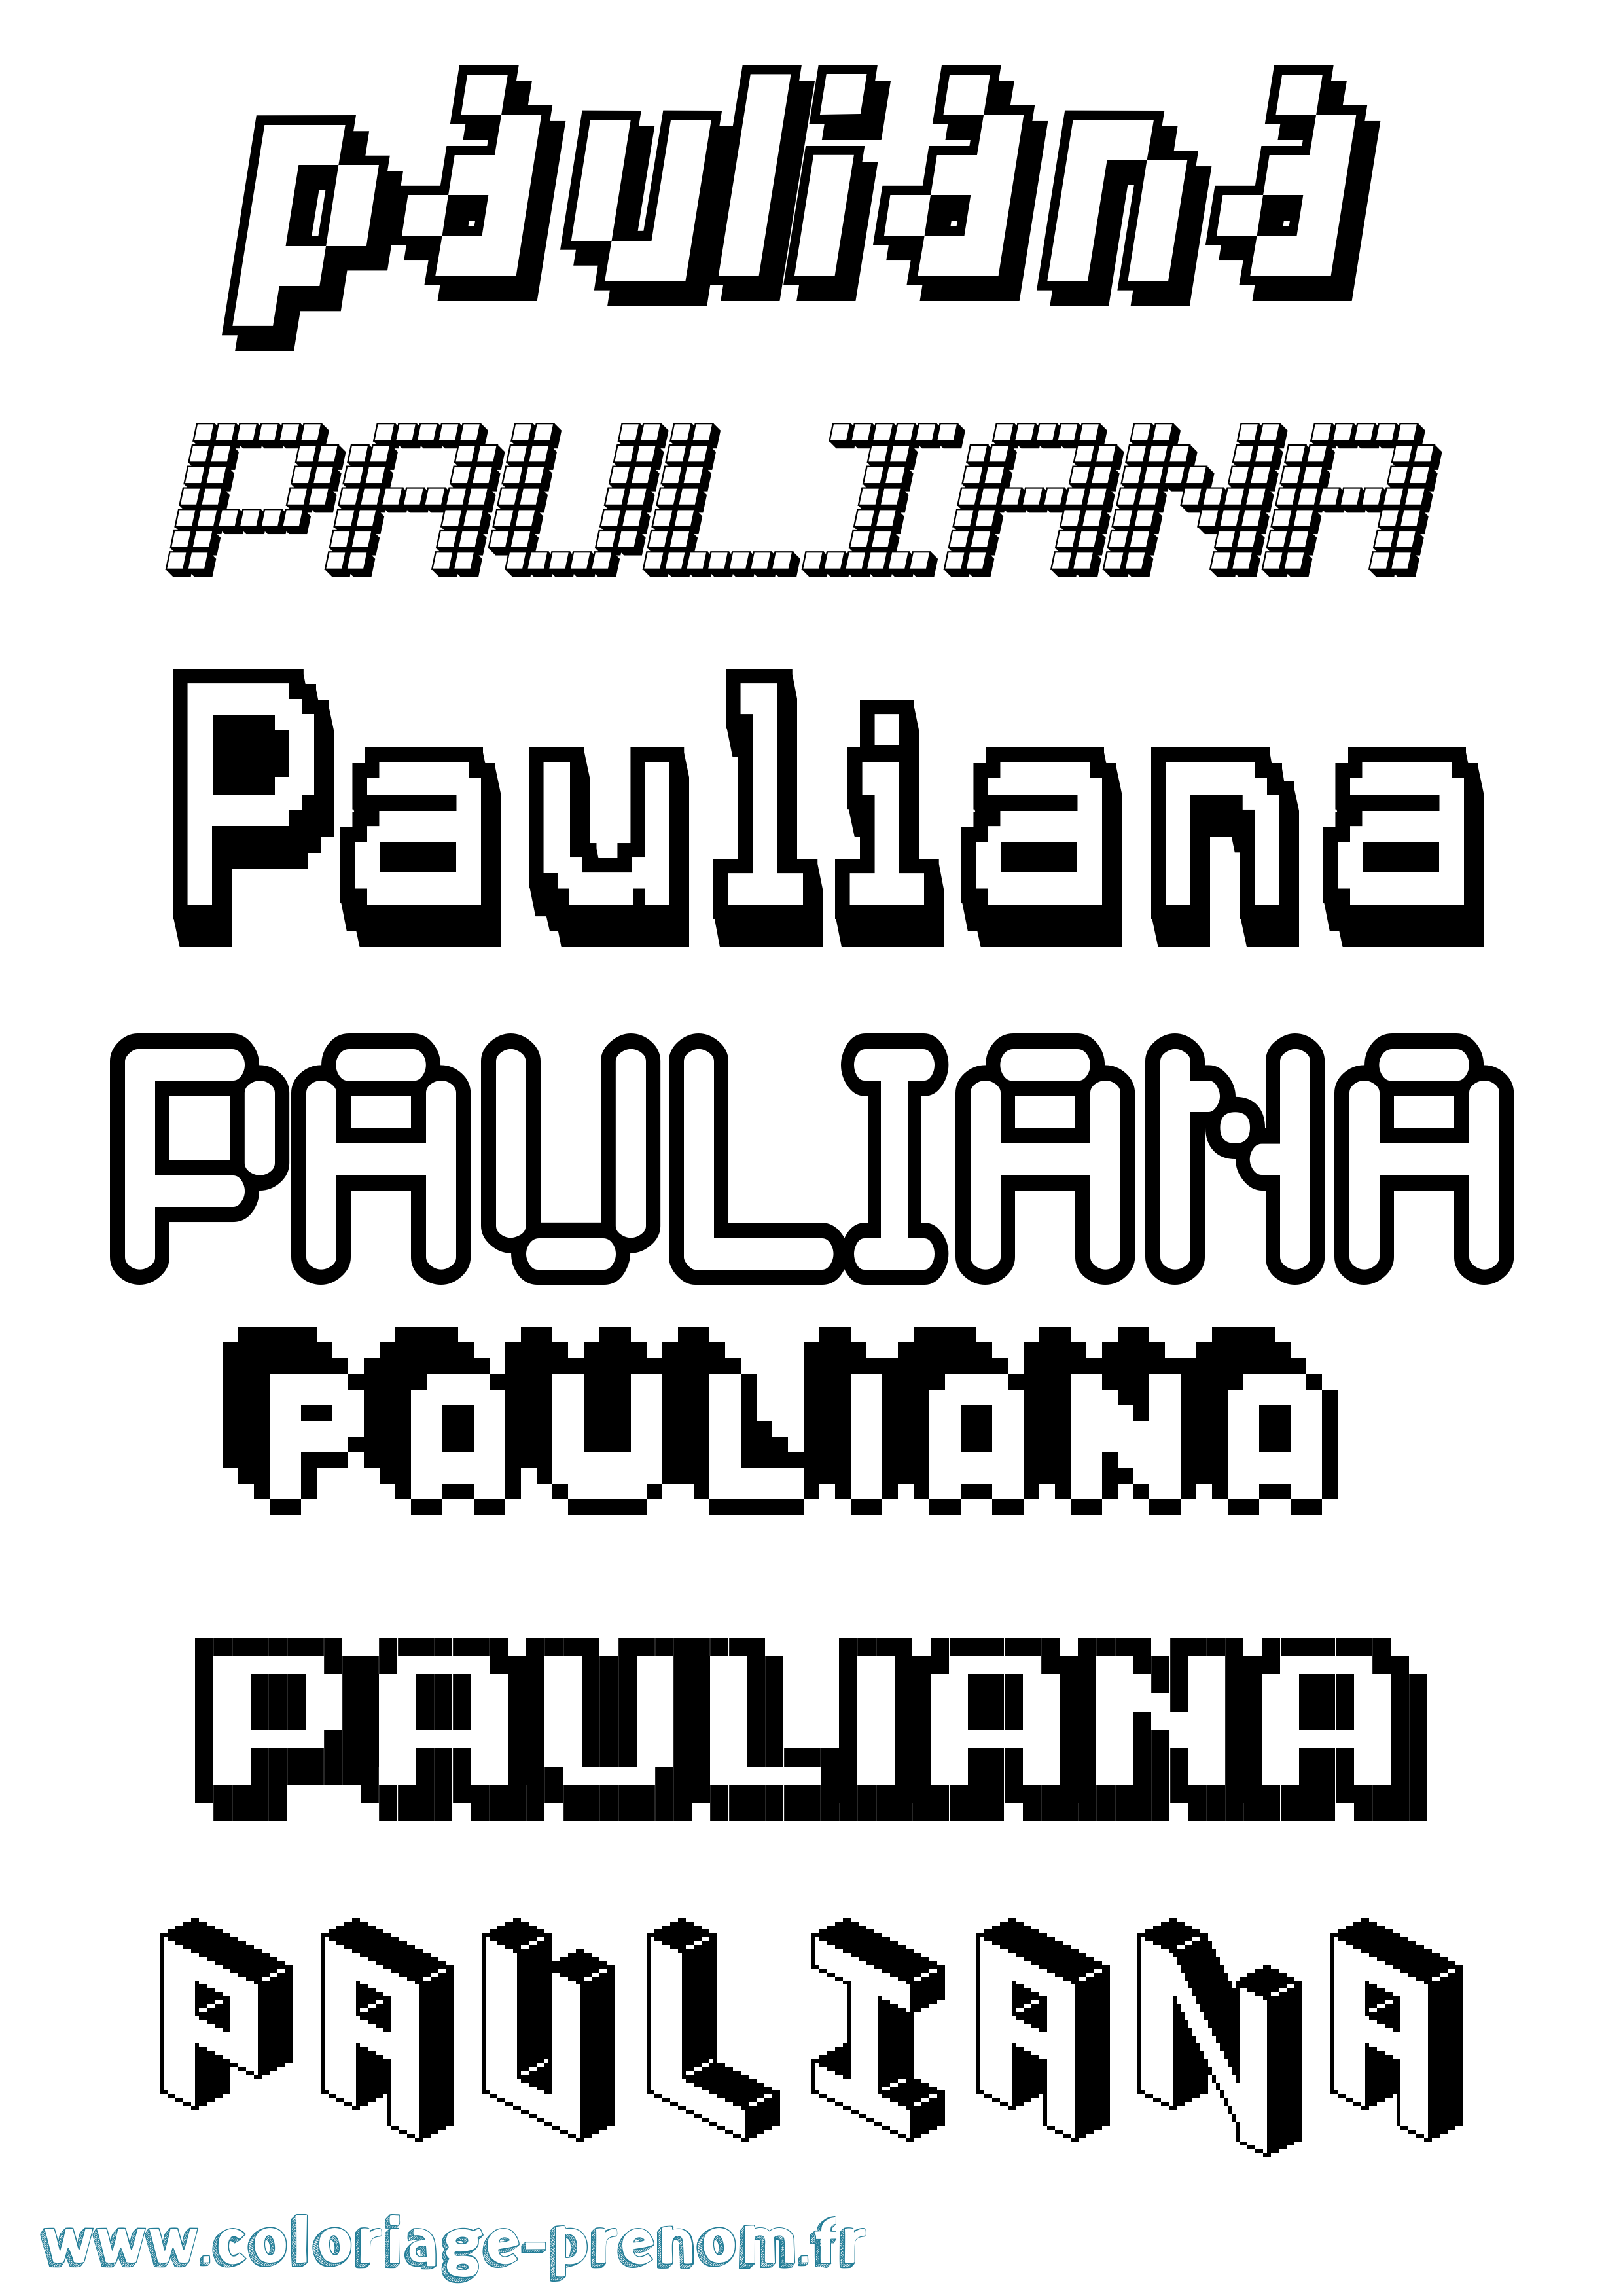 Coloriage prénom Pauliana Pixel